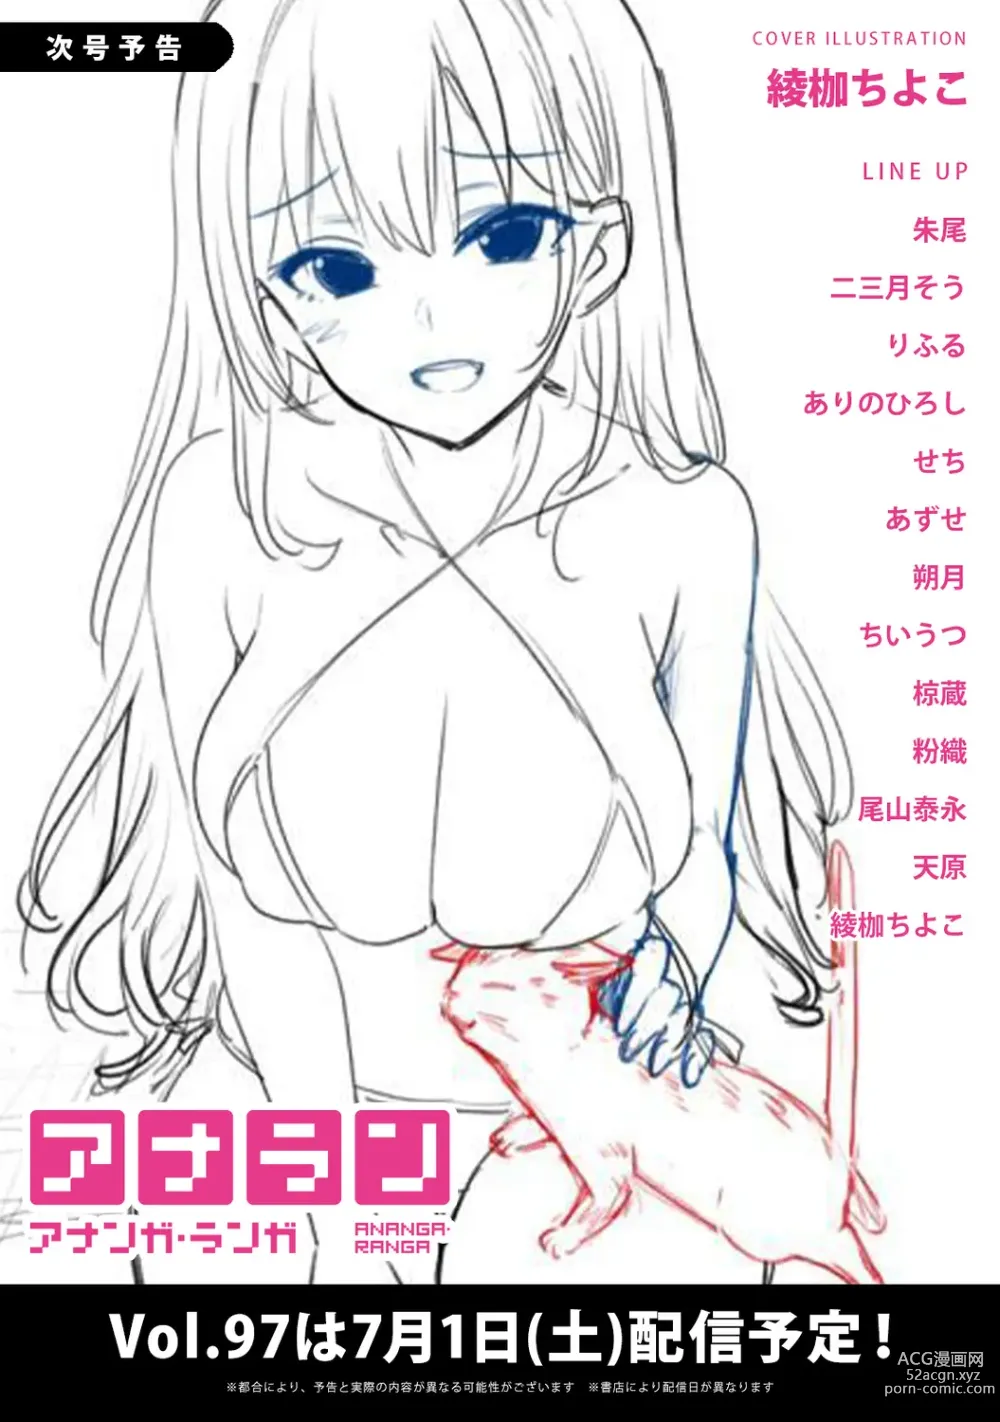 Page 426 of manga COMIC Ananga Ranga Vol. 96